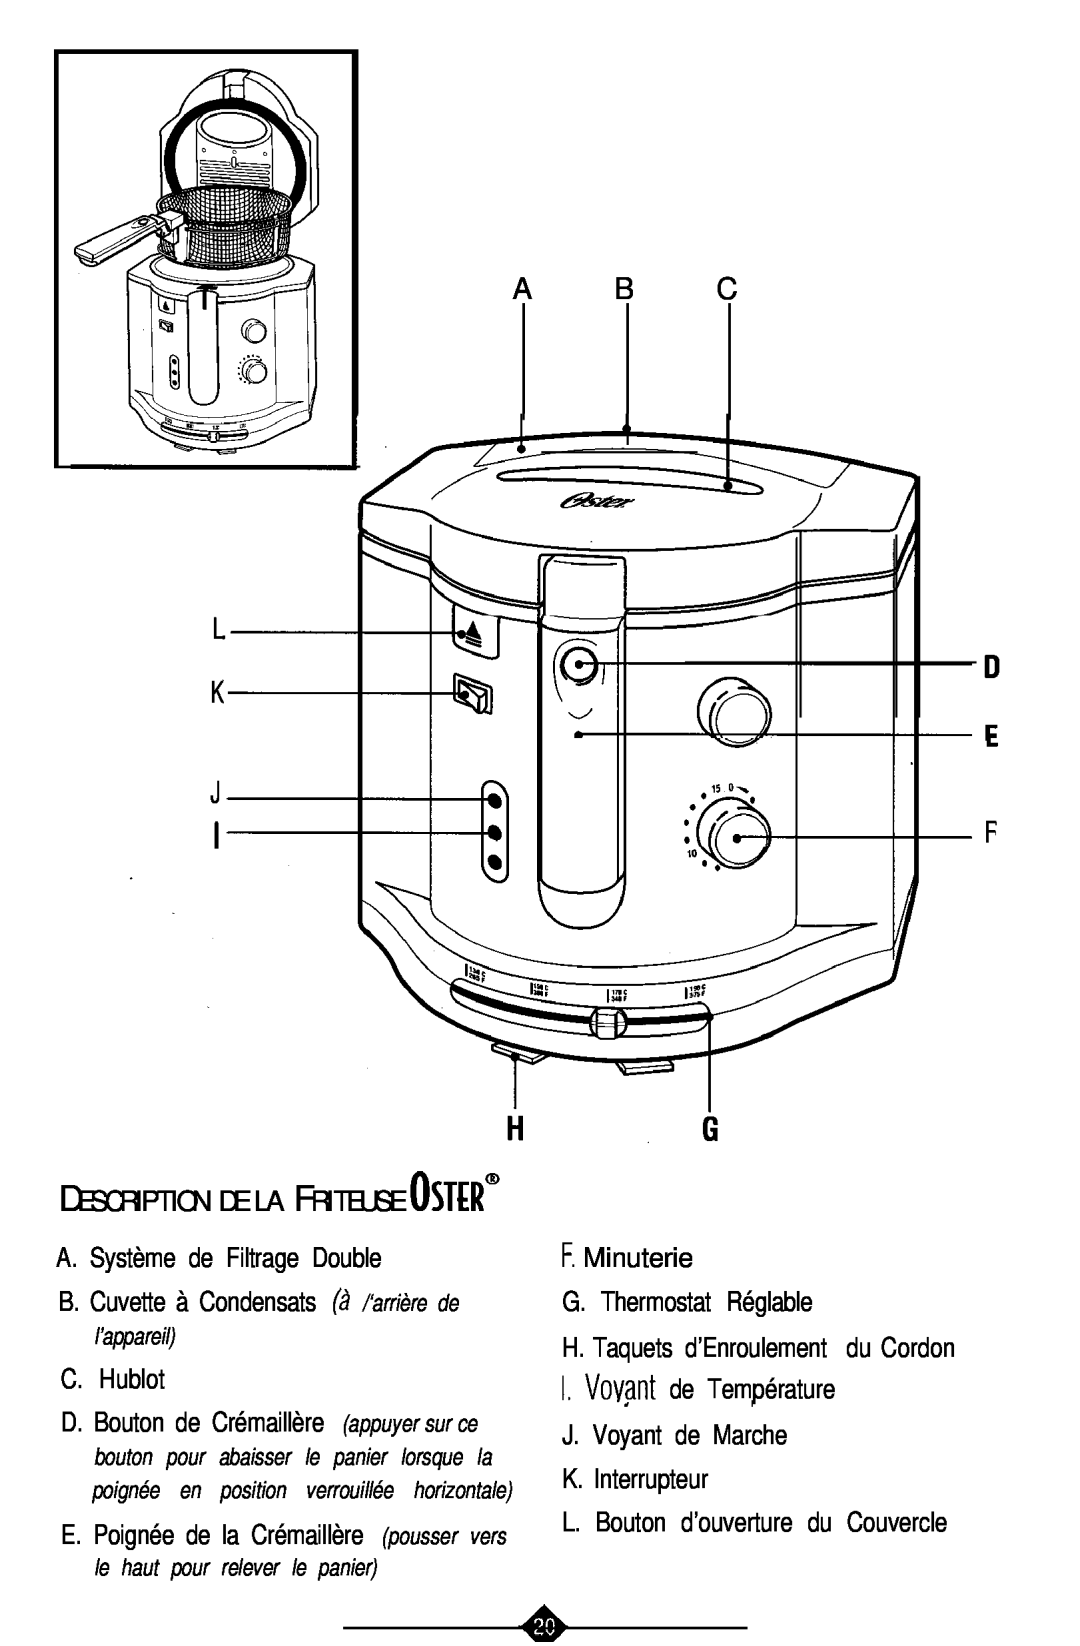 Sunbeam 3241, 3240 manual A B C, A. Système de Filtrage Double, C.Hublot, F.Minuterie G.Thermostat Réglable 